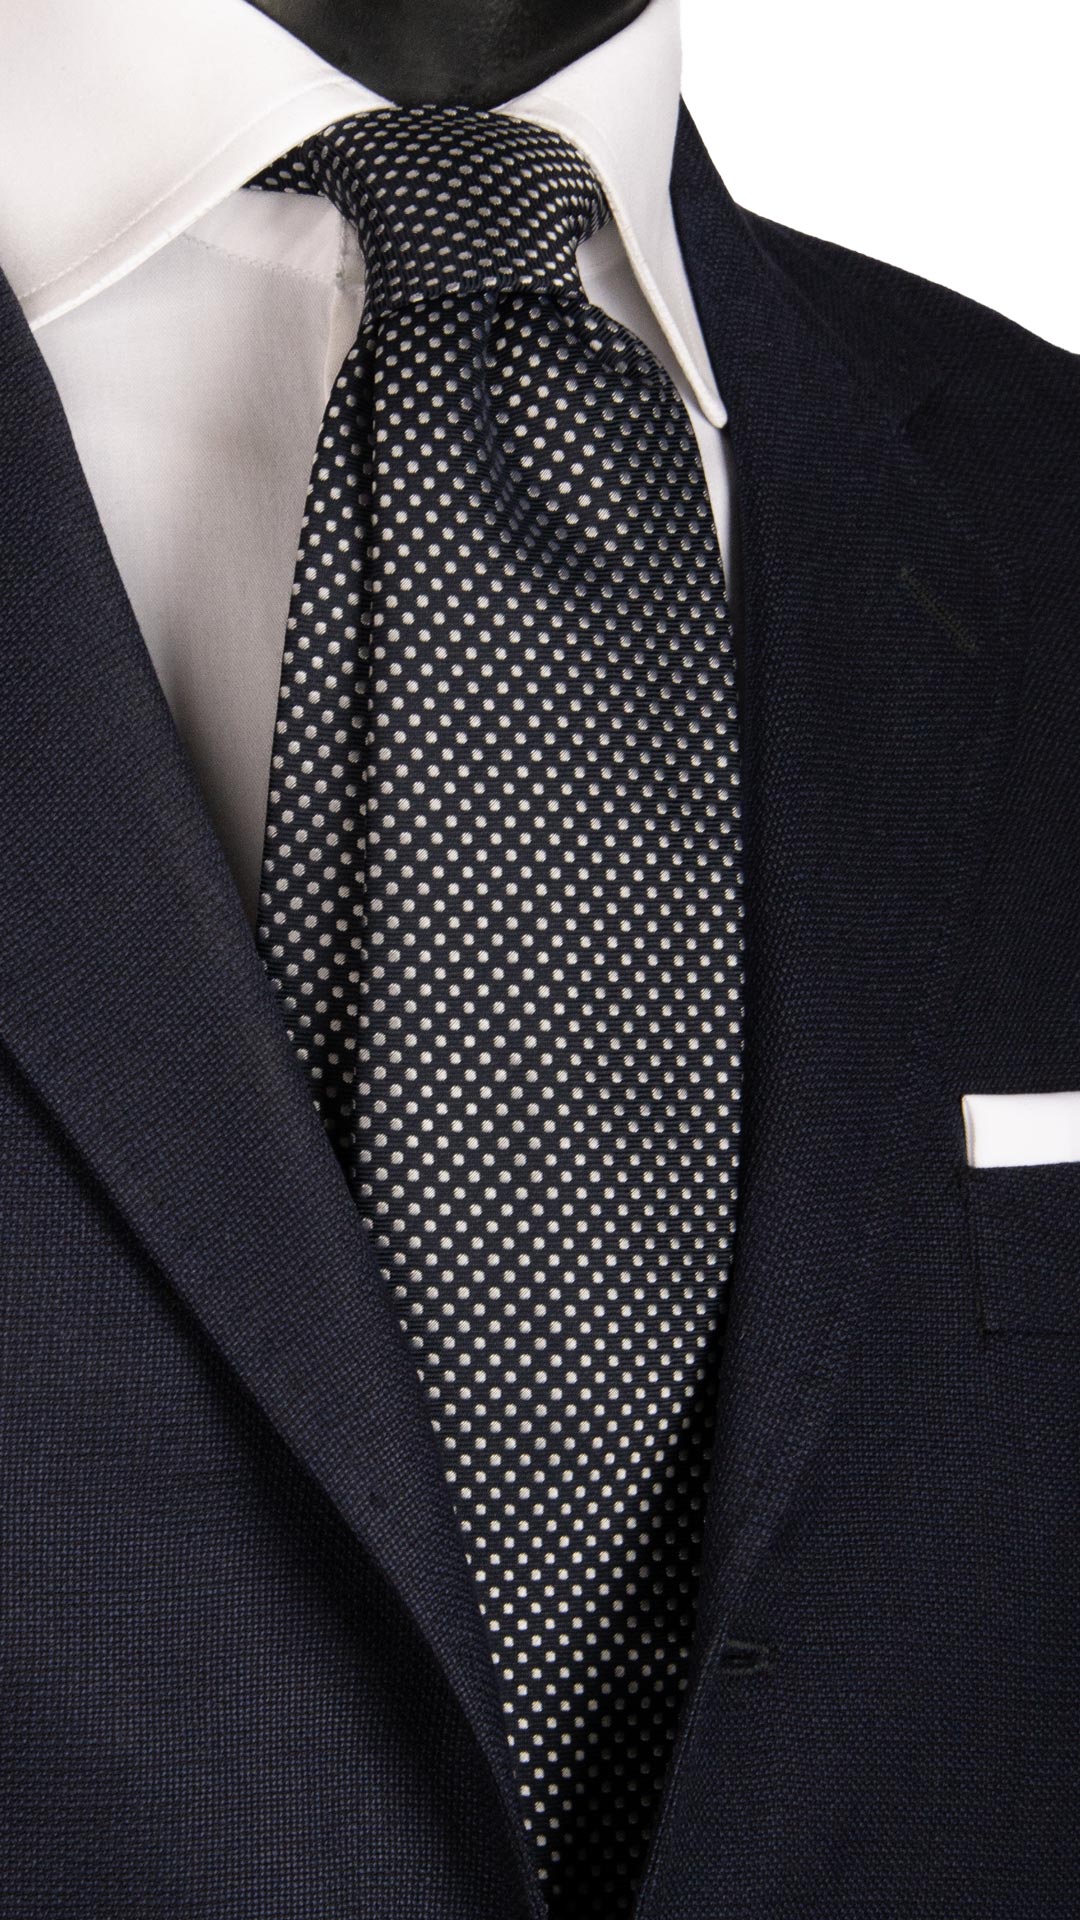 Cravatta da Cerimonia di Seta Blu a Pois Grigio Argento CY6676 Made in Italy Graffeo Cravatte